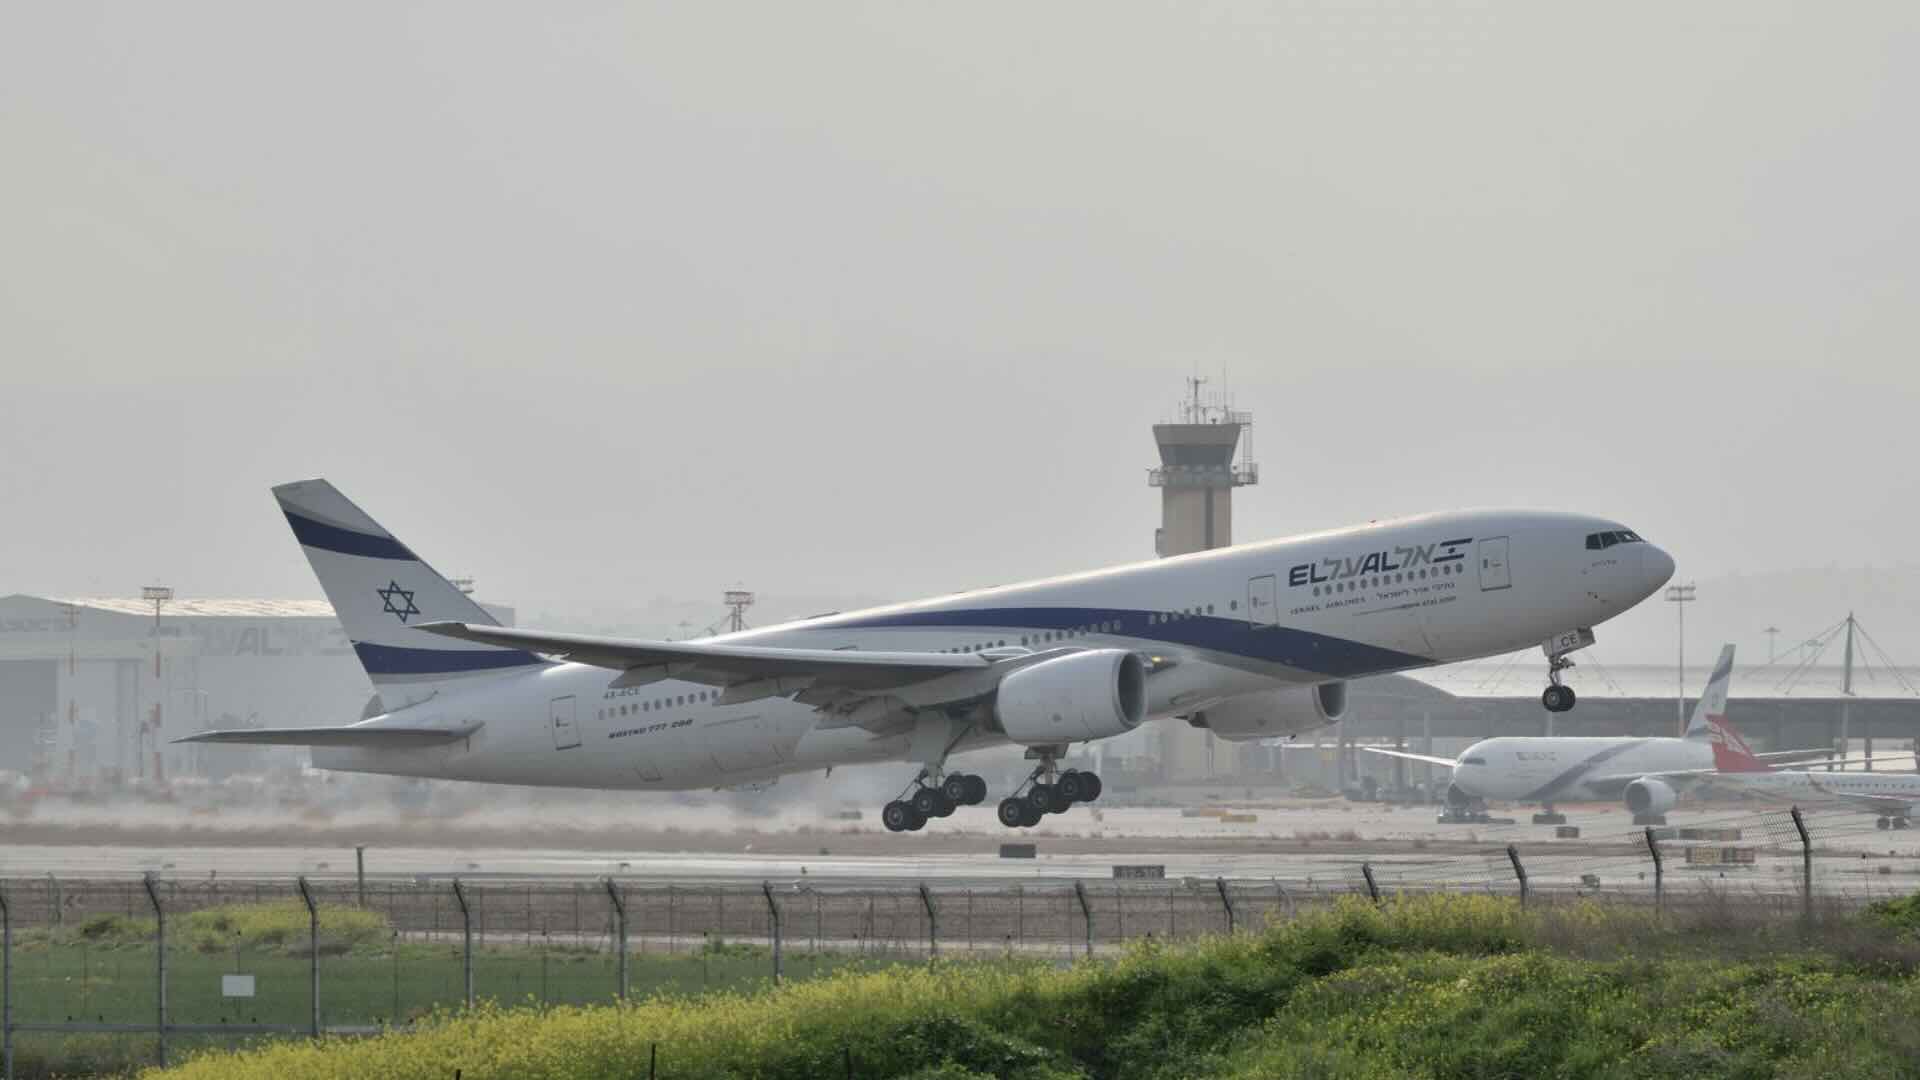 Volo aereo israeliano El Al dirottato: passeggero tenta di entrare con forza nella cabina di pilotaggio